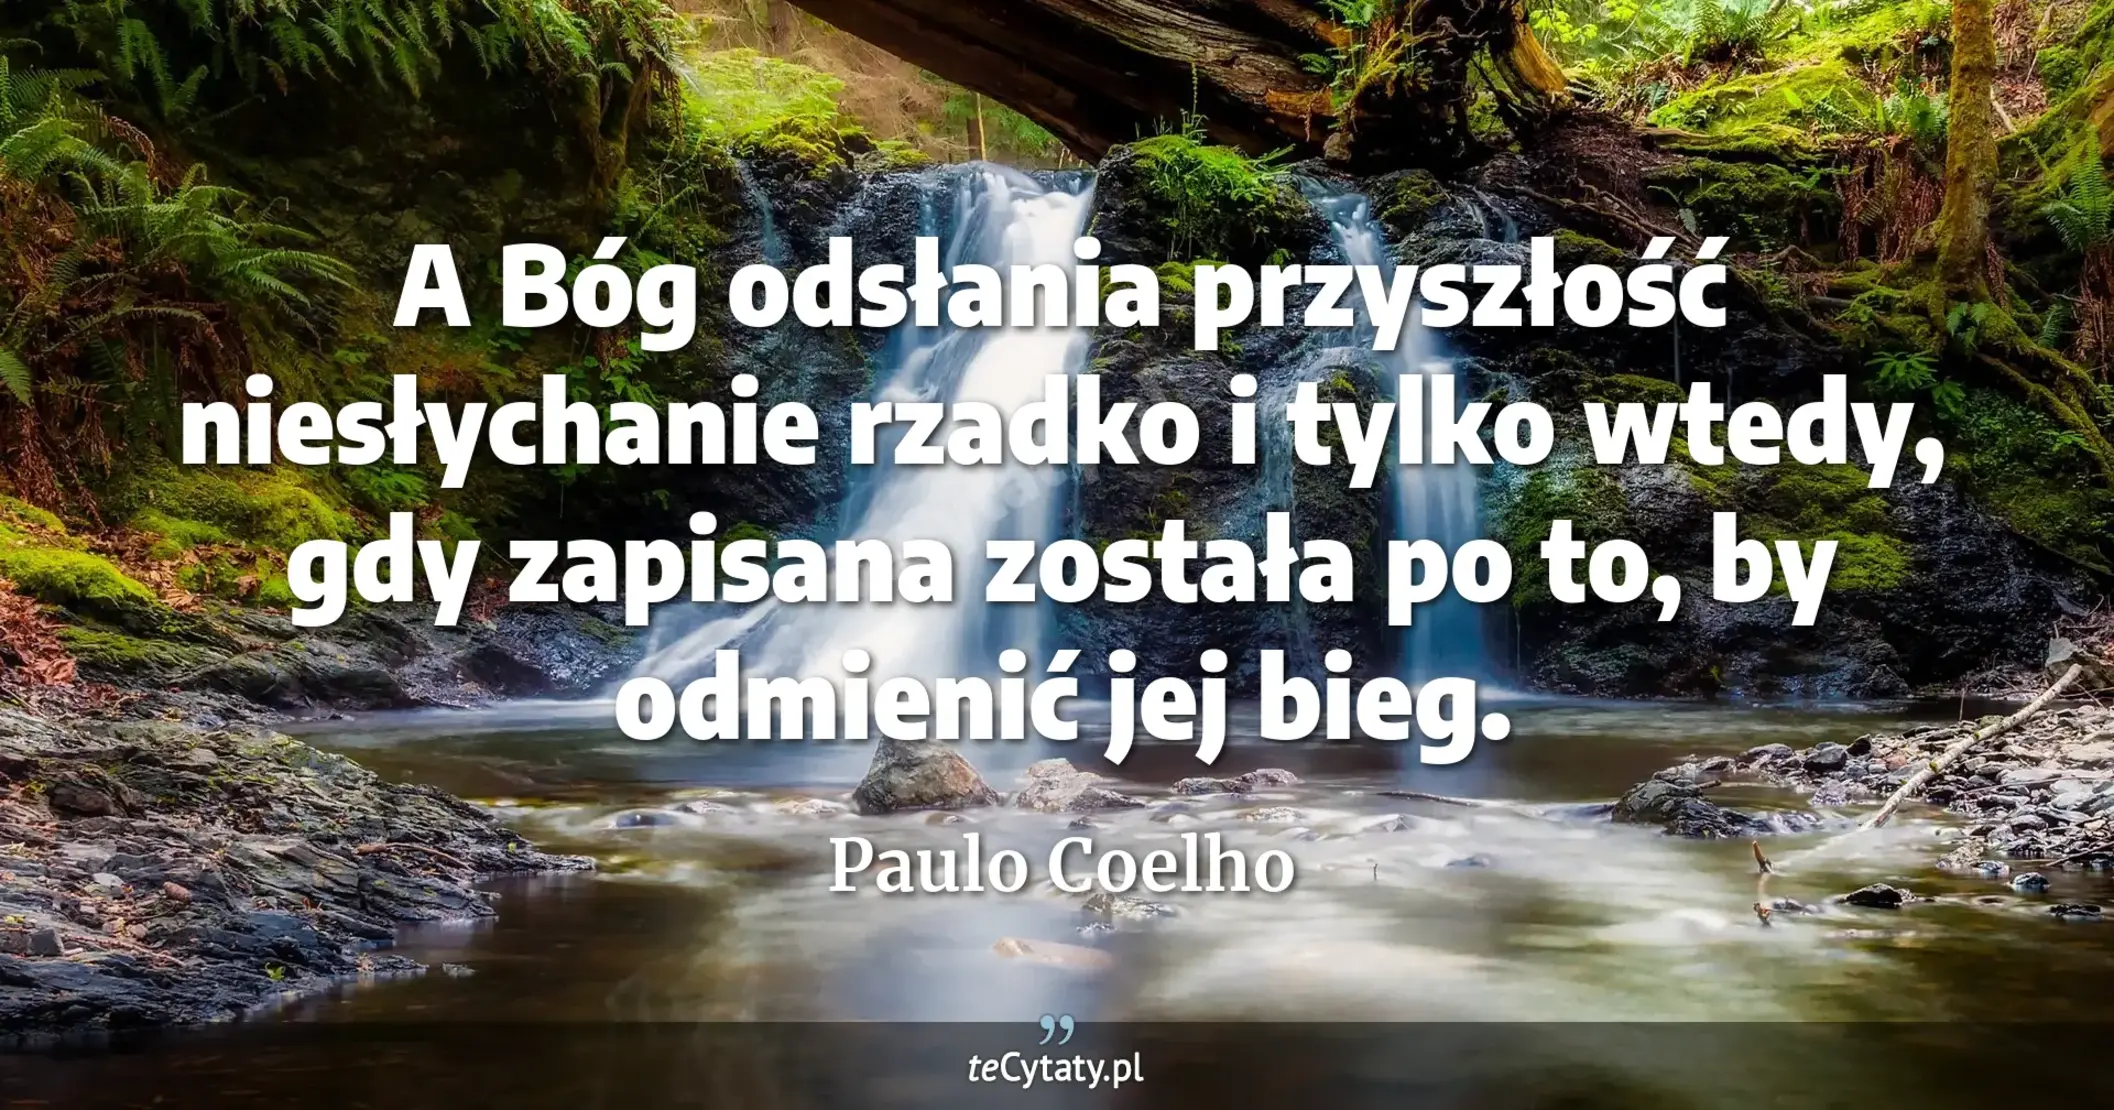 A Bóg odsłania przyszłość niesłychanie rzadko i tylko wtedy, gdy zapisana została po to, by odmienić jej bieg. - Paulo Coelho